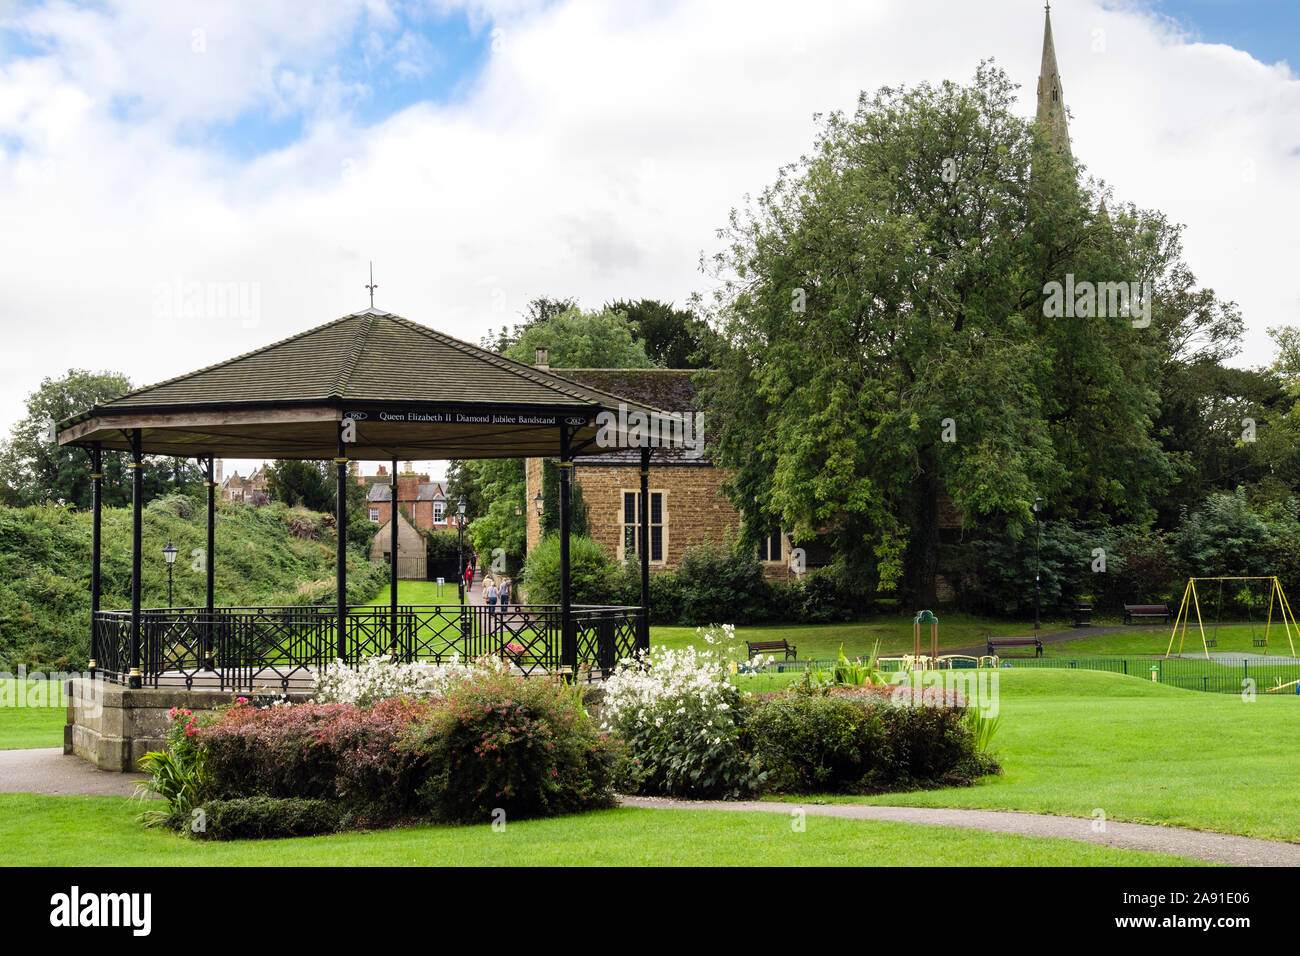 Jubilé de diamant de la reine Elizabeth II en 2012 Kiosque Cutts Fermer parc. Oakham, Rutland, England, UK, Grande-Bretagne Banque D'Images